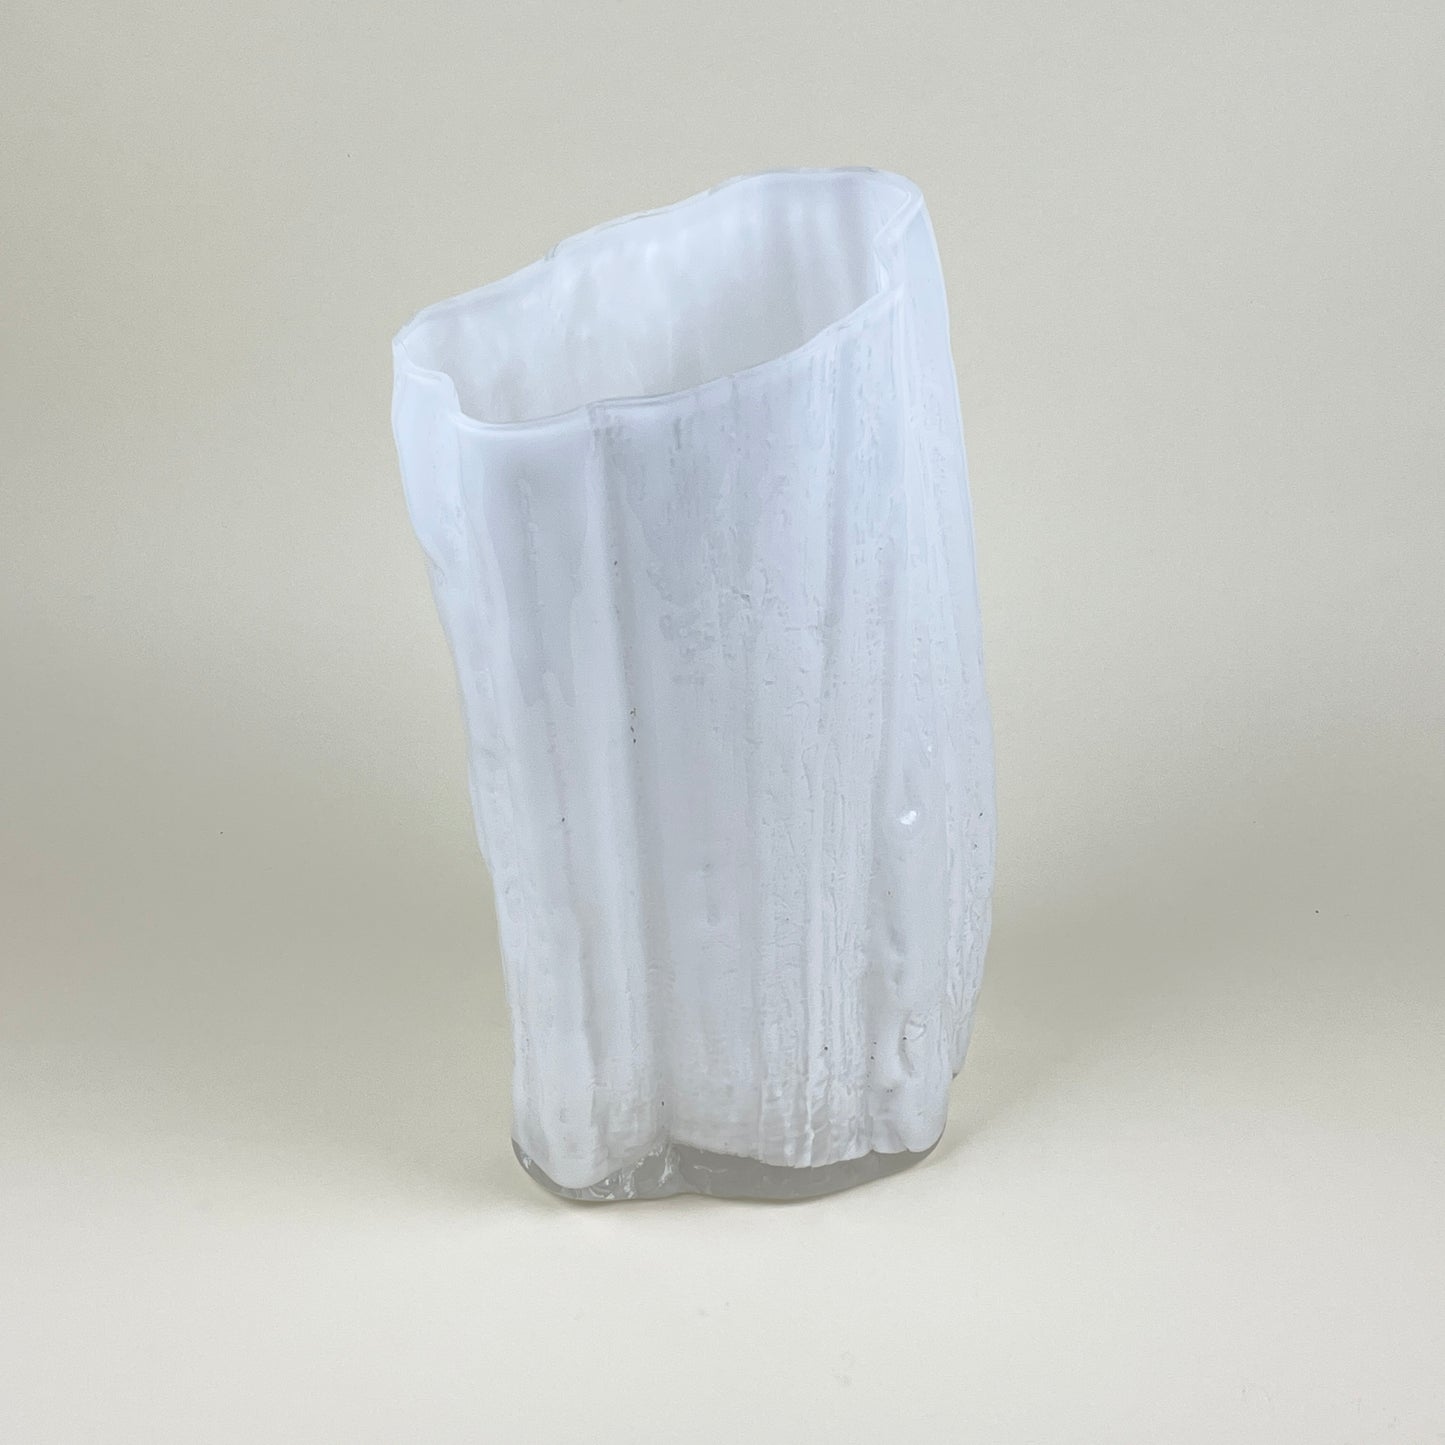 White mouth-blown vase by LAB LA BLA